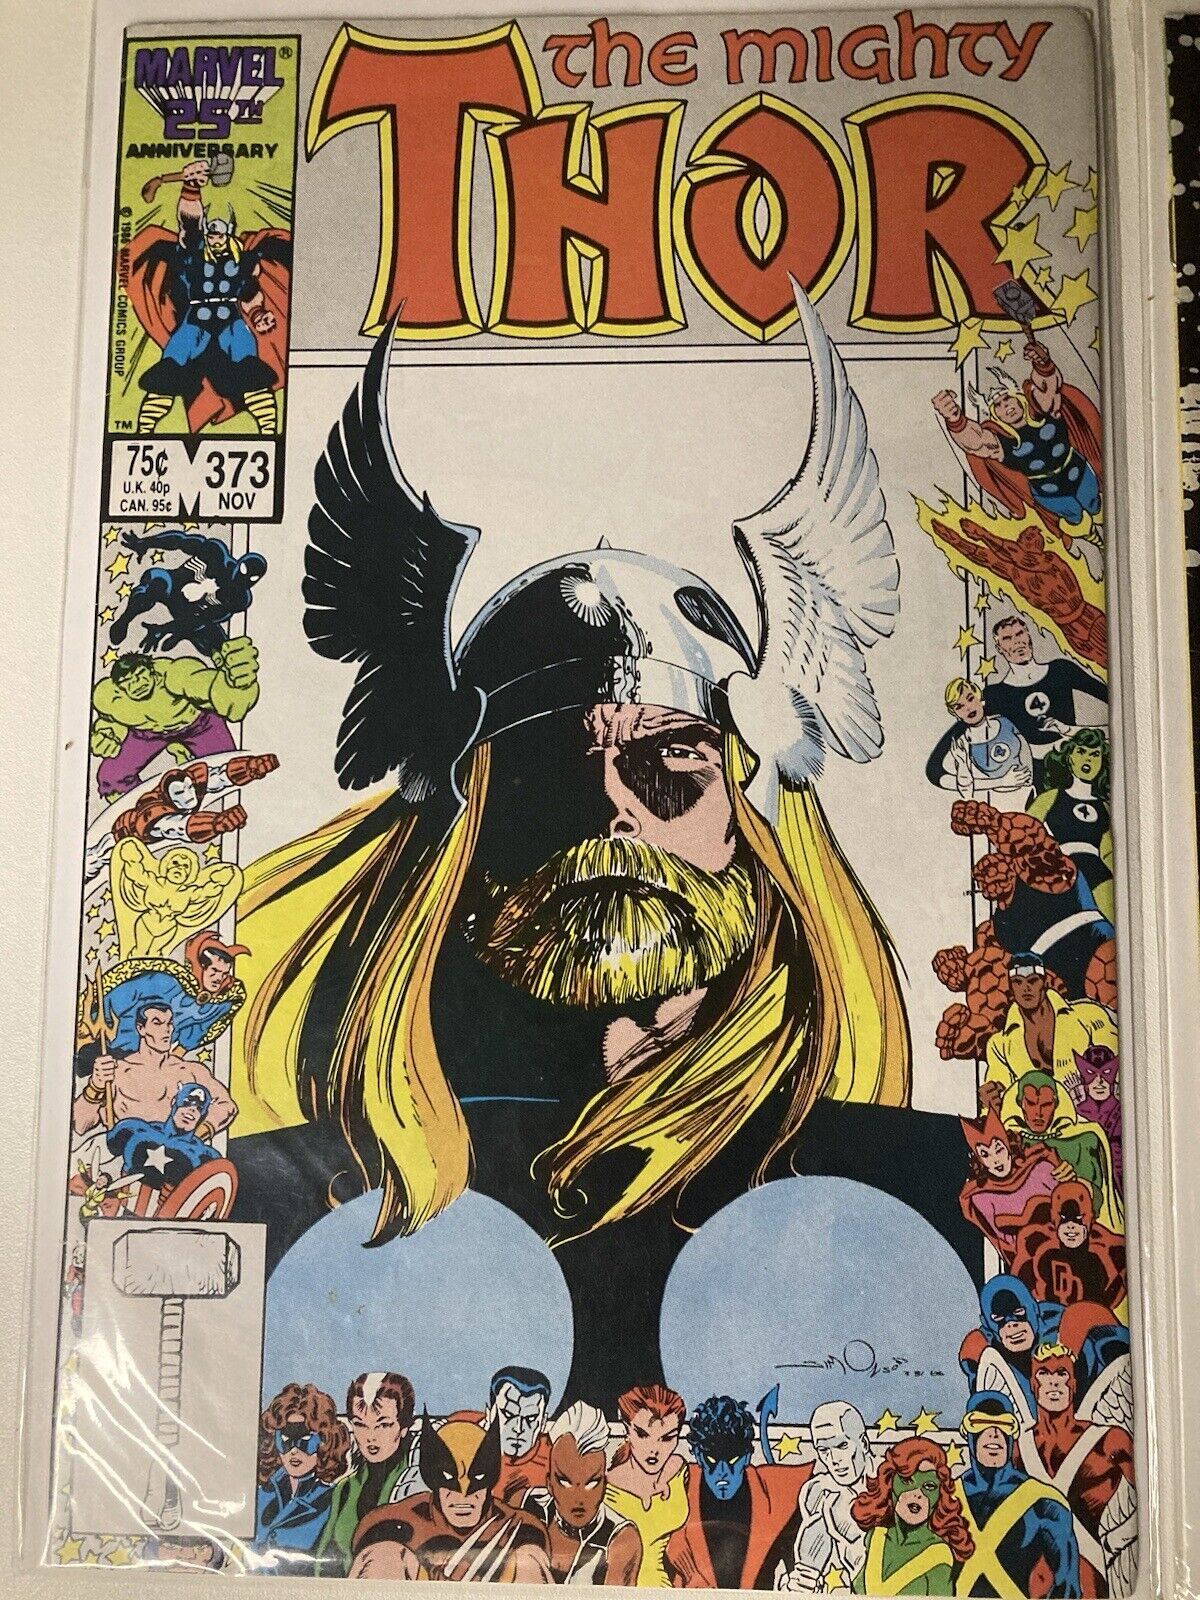 The Mighty Thor #373 (Marvel Comics November 1986)